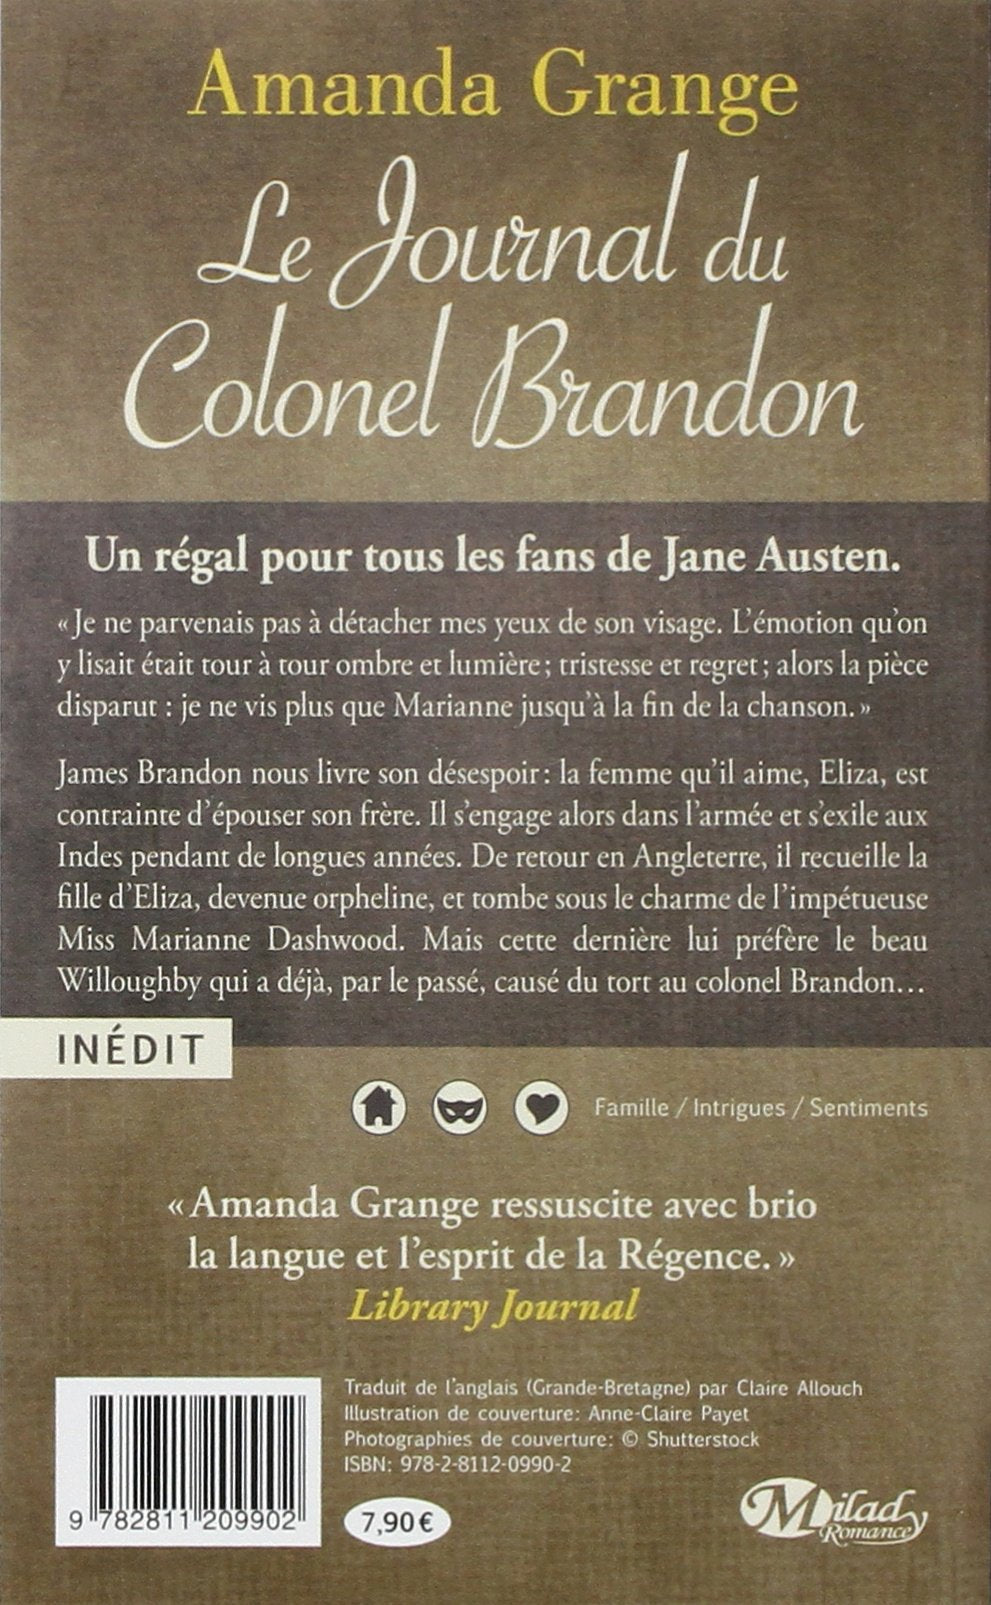 Le journal du Colonel Brandon (Amanda Grange)